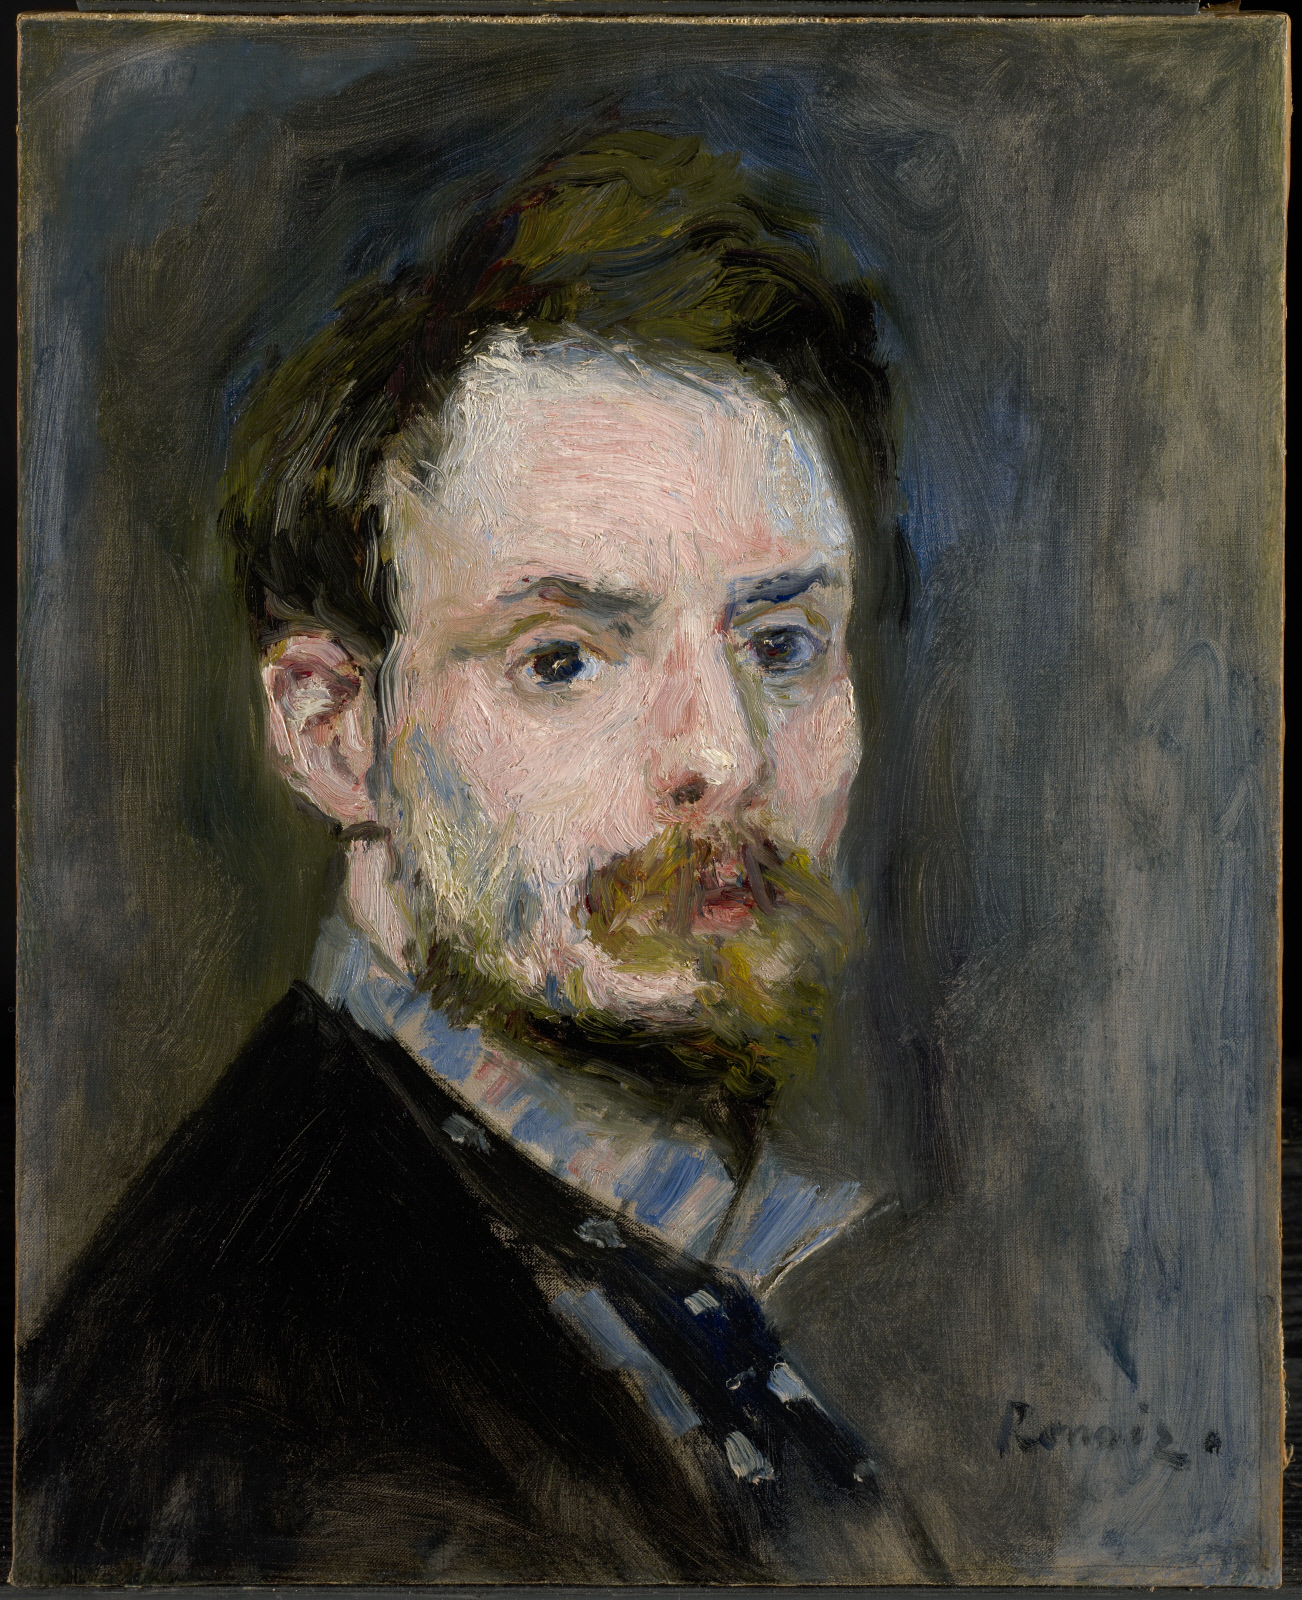 Autoportrait by Pierre-Auguste Renoir - c. 1875 The Clark